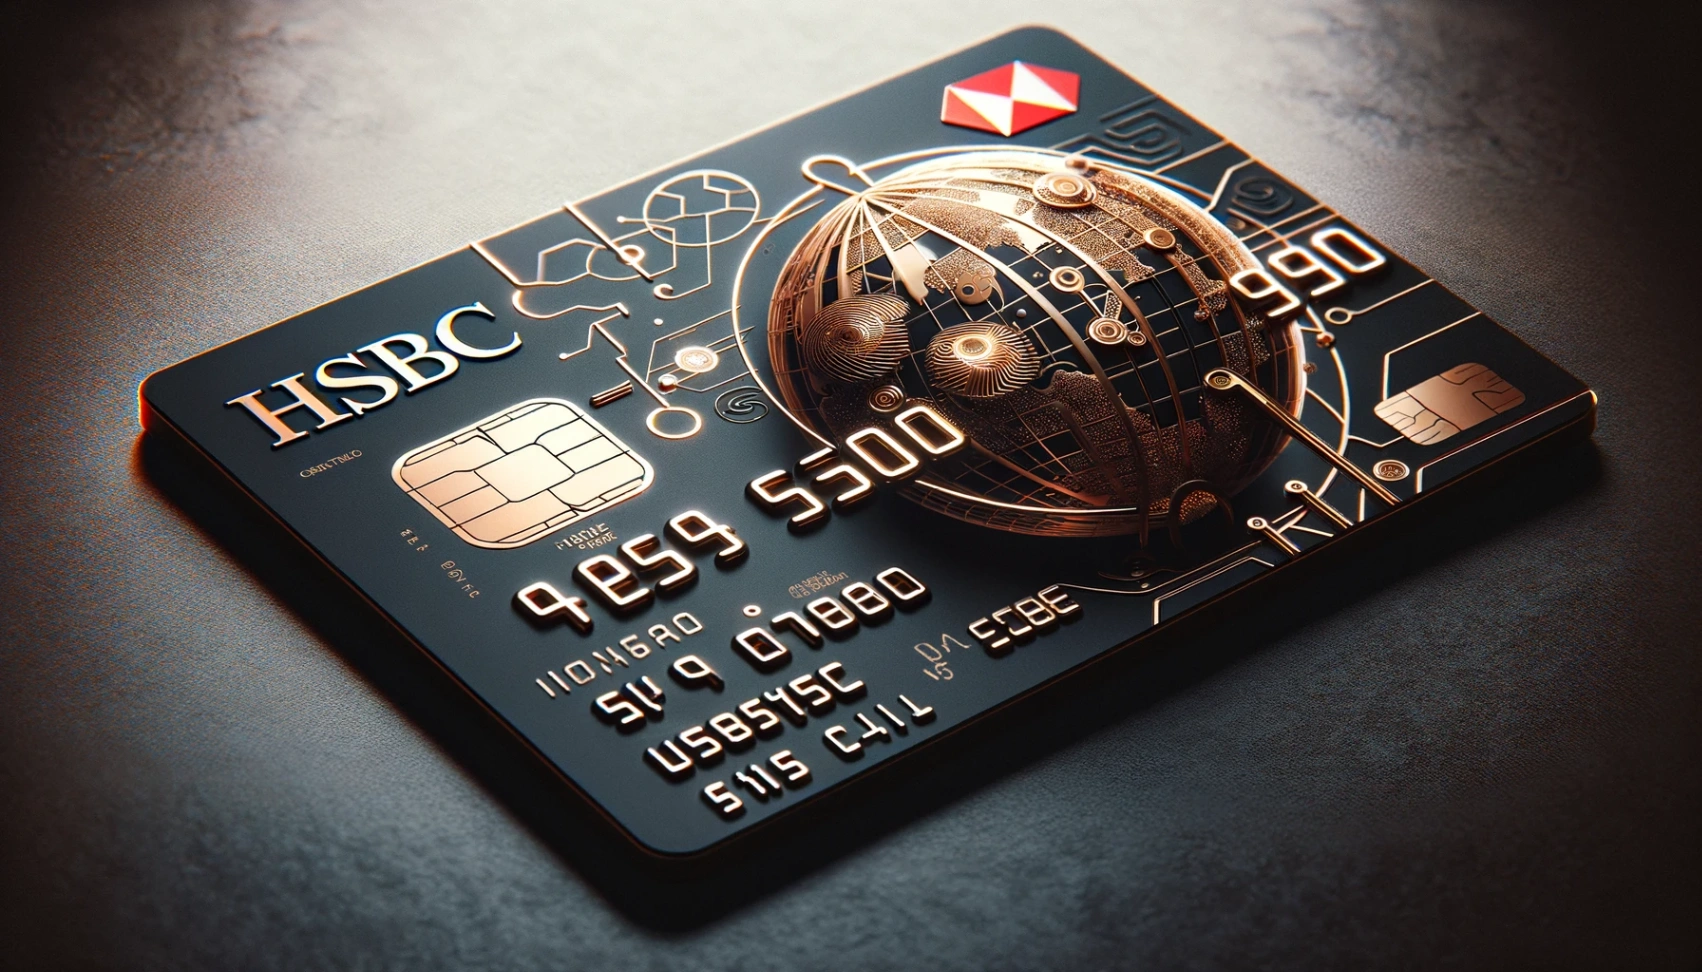 Tarjeta de Crédito HSBC - Aprende Cómo Solicitar Ahora